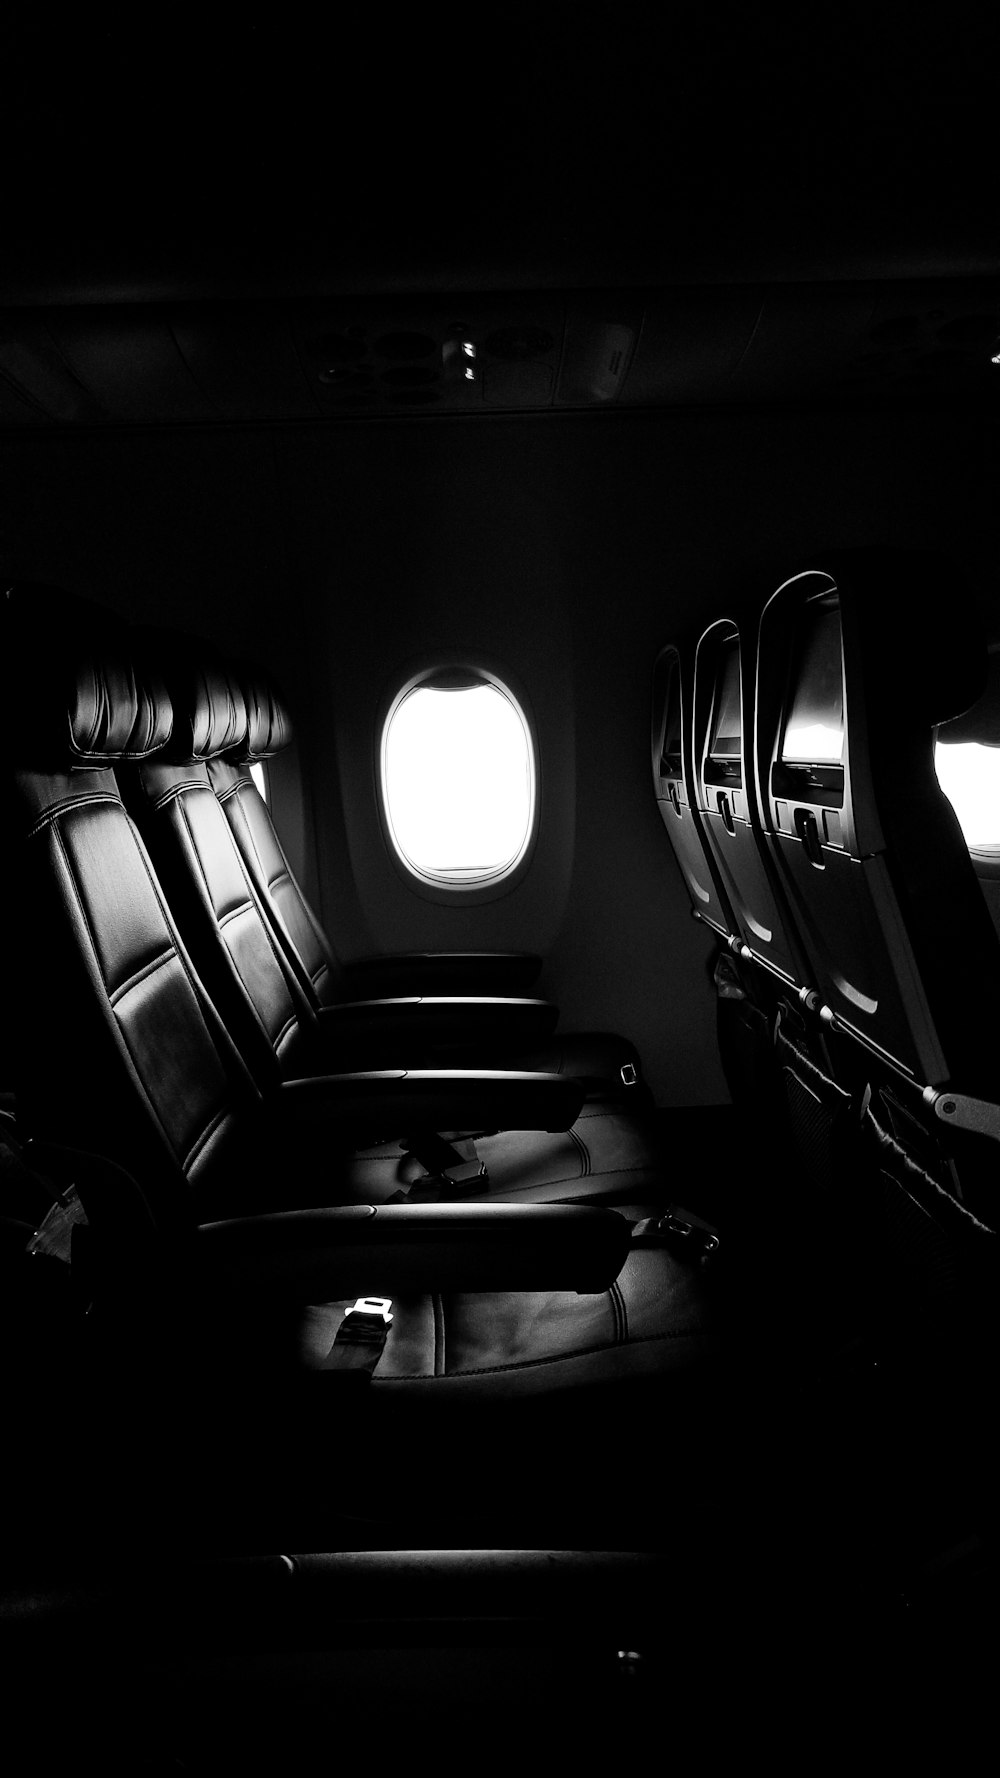 sillas vacías de avión